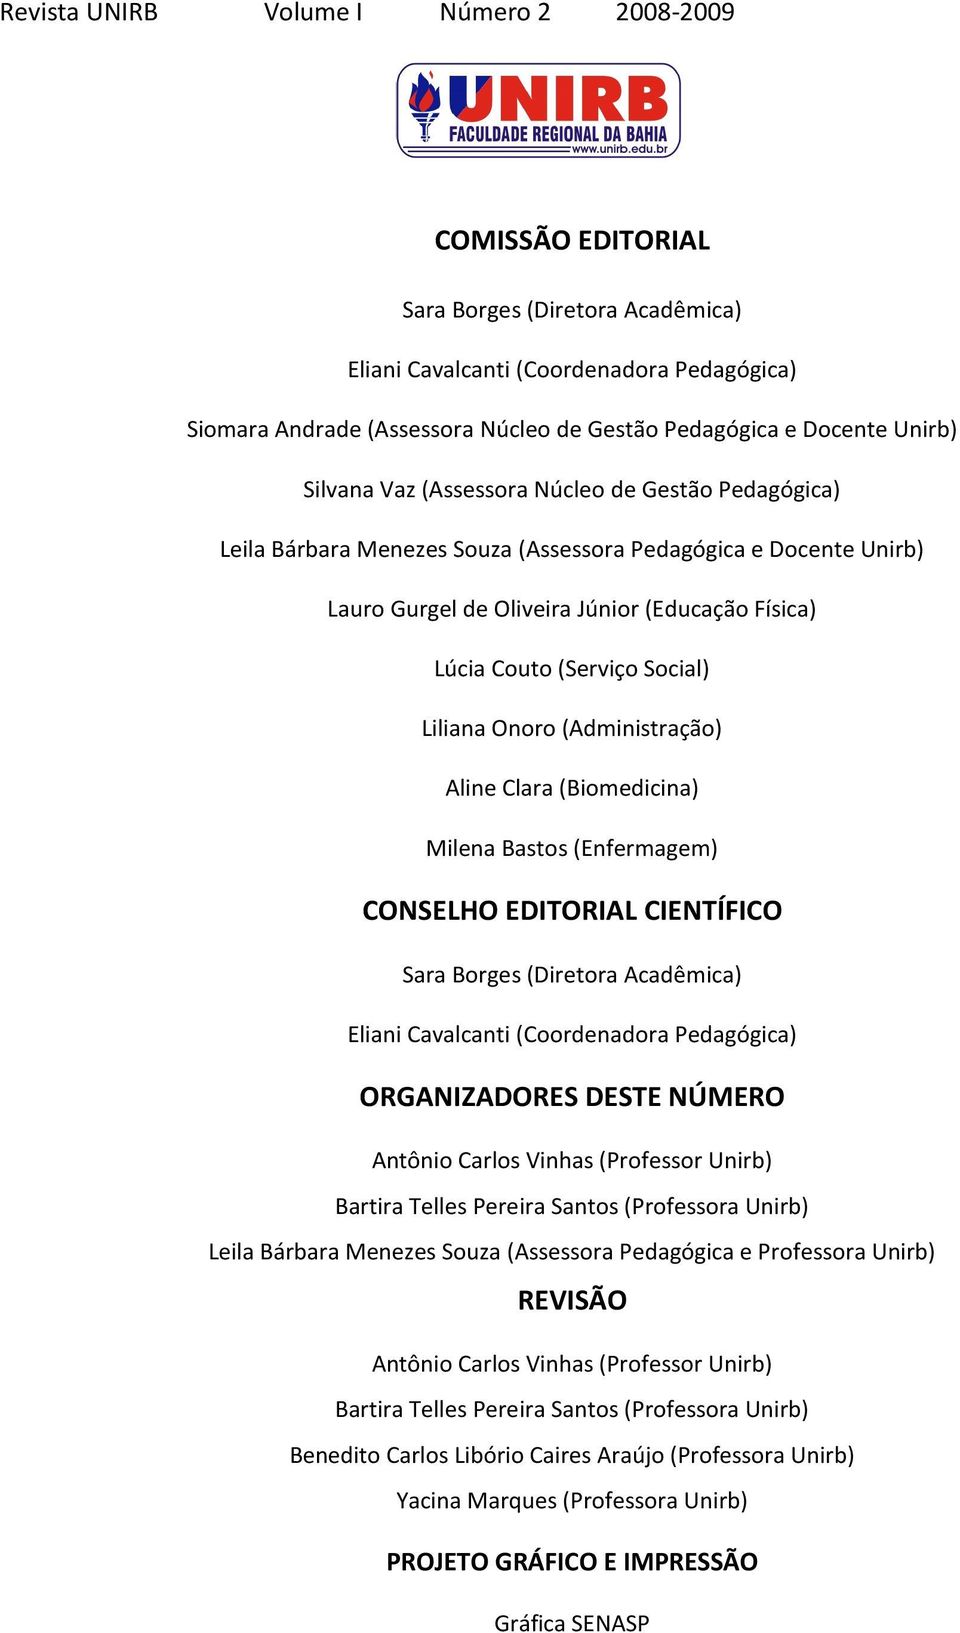 (Serviço Social) Liliana Onoro (Administração) Aline Clara (Biomedicina) Milena Bastos (Enfermagem) CONSELHO EDITORIAL CIENTÍFICO Sara Borges (Diretora Acadêmica) Eliani Cavalcanti (Coordenadora